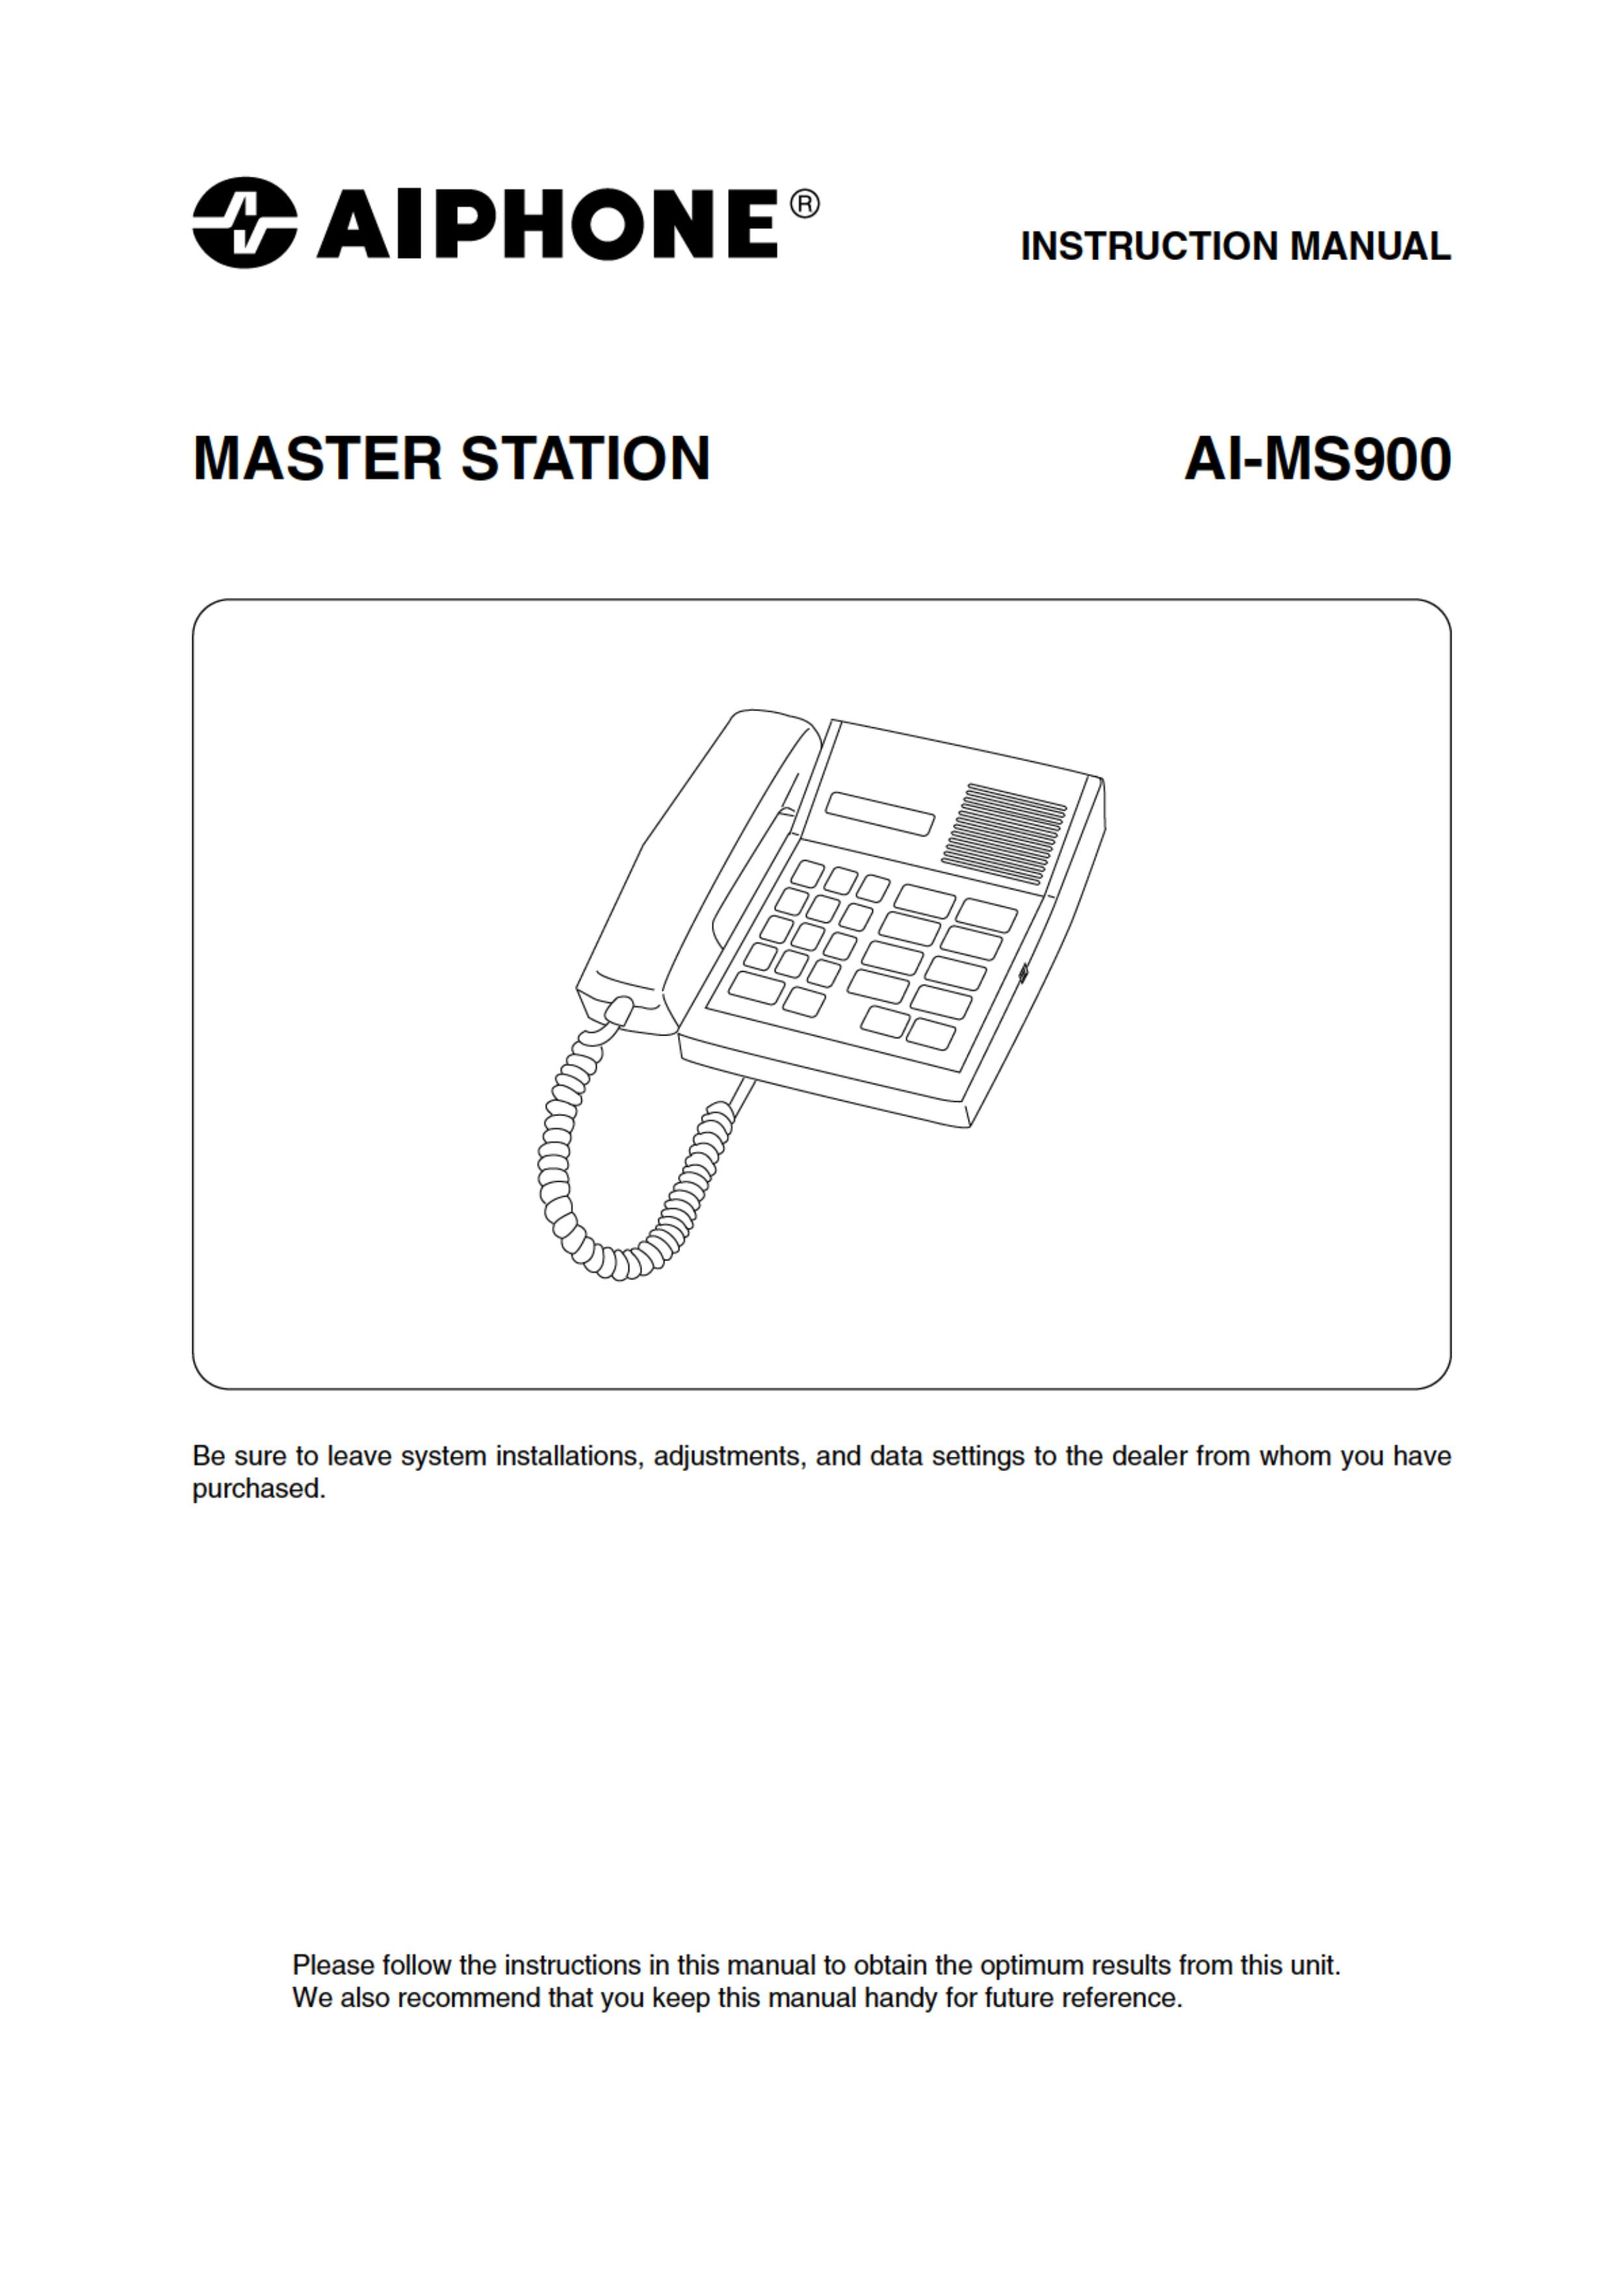 Aiphone AI-MS900 Telephone User Manual